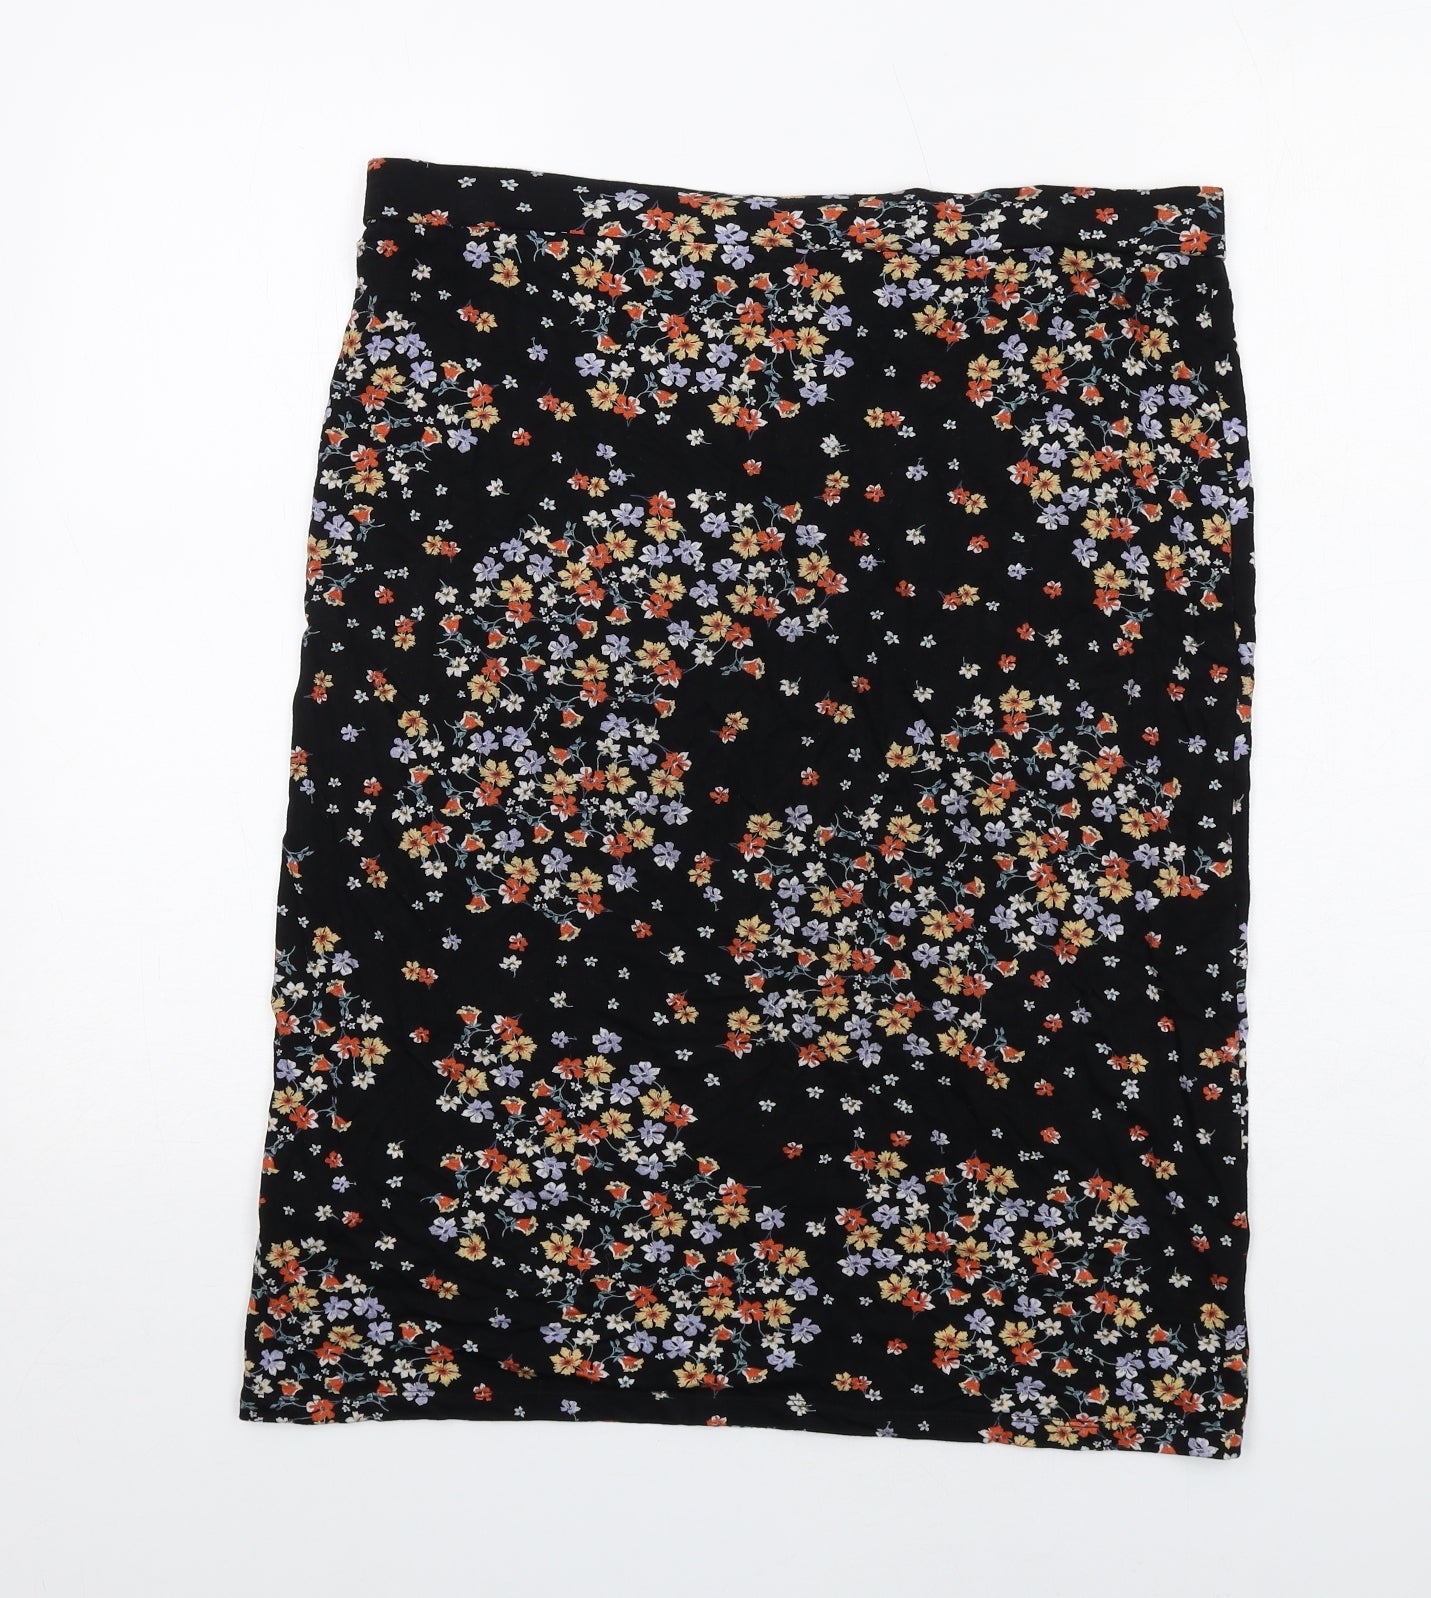 Bonmarché Womens Black Floral Viscose A-Line Skirt Size 16